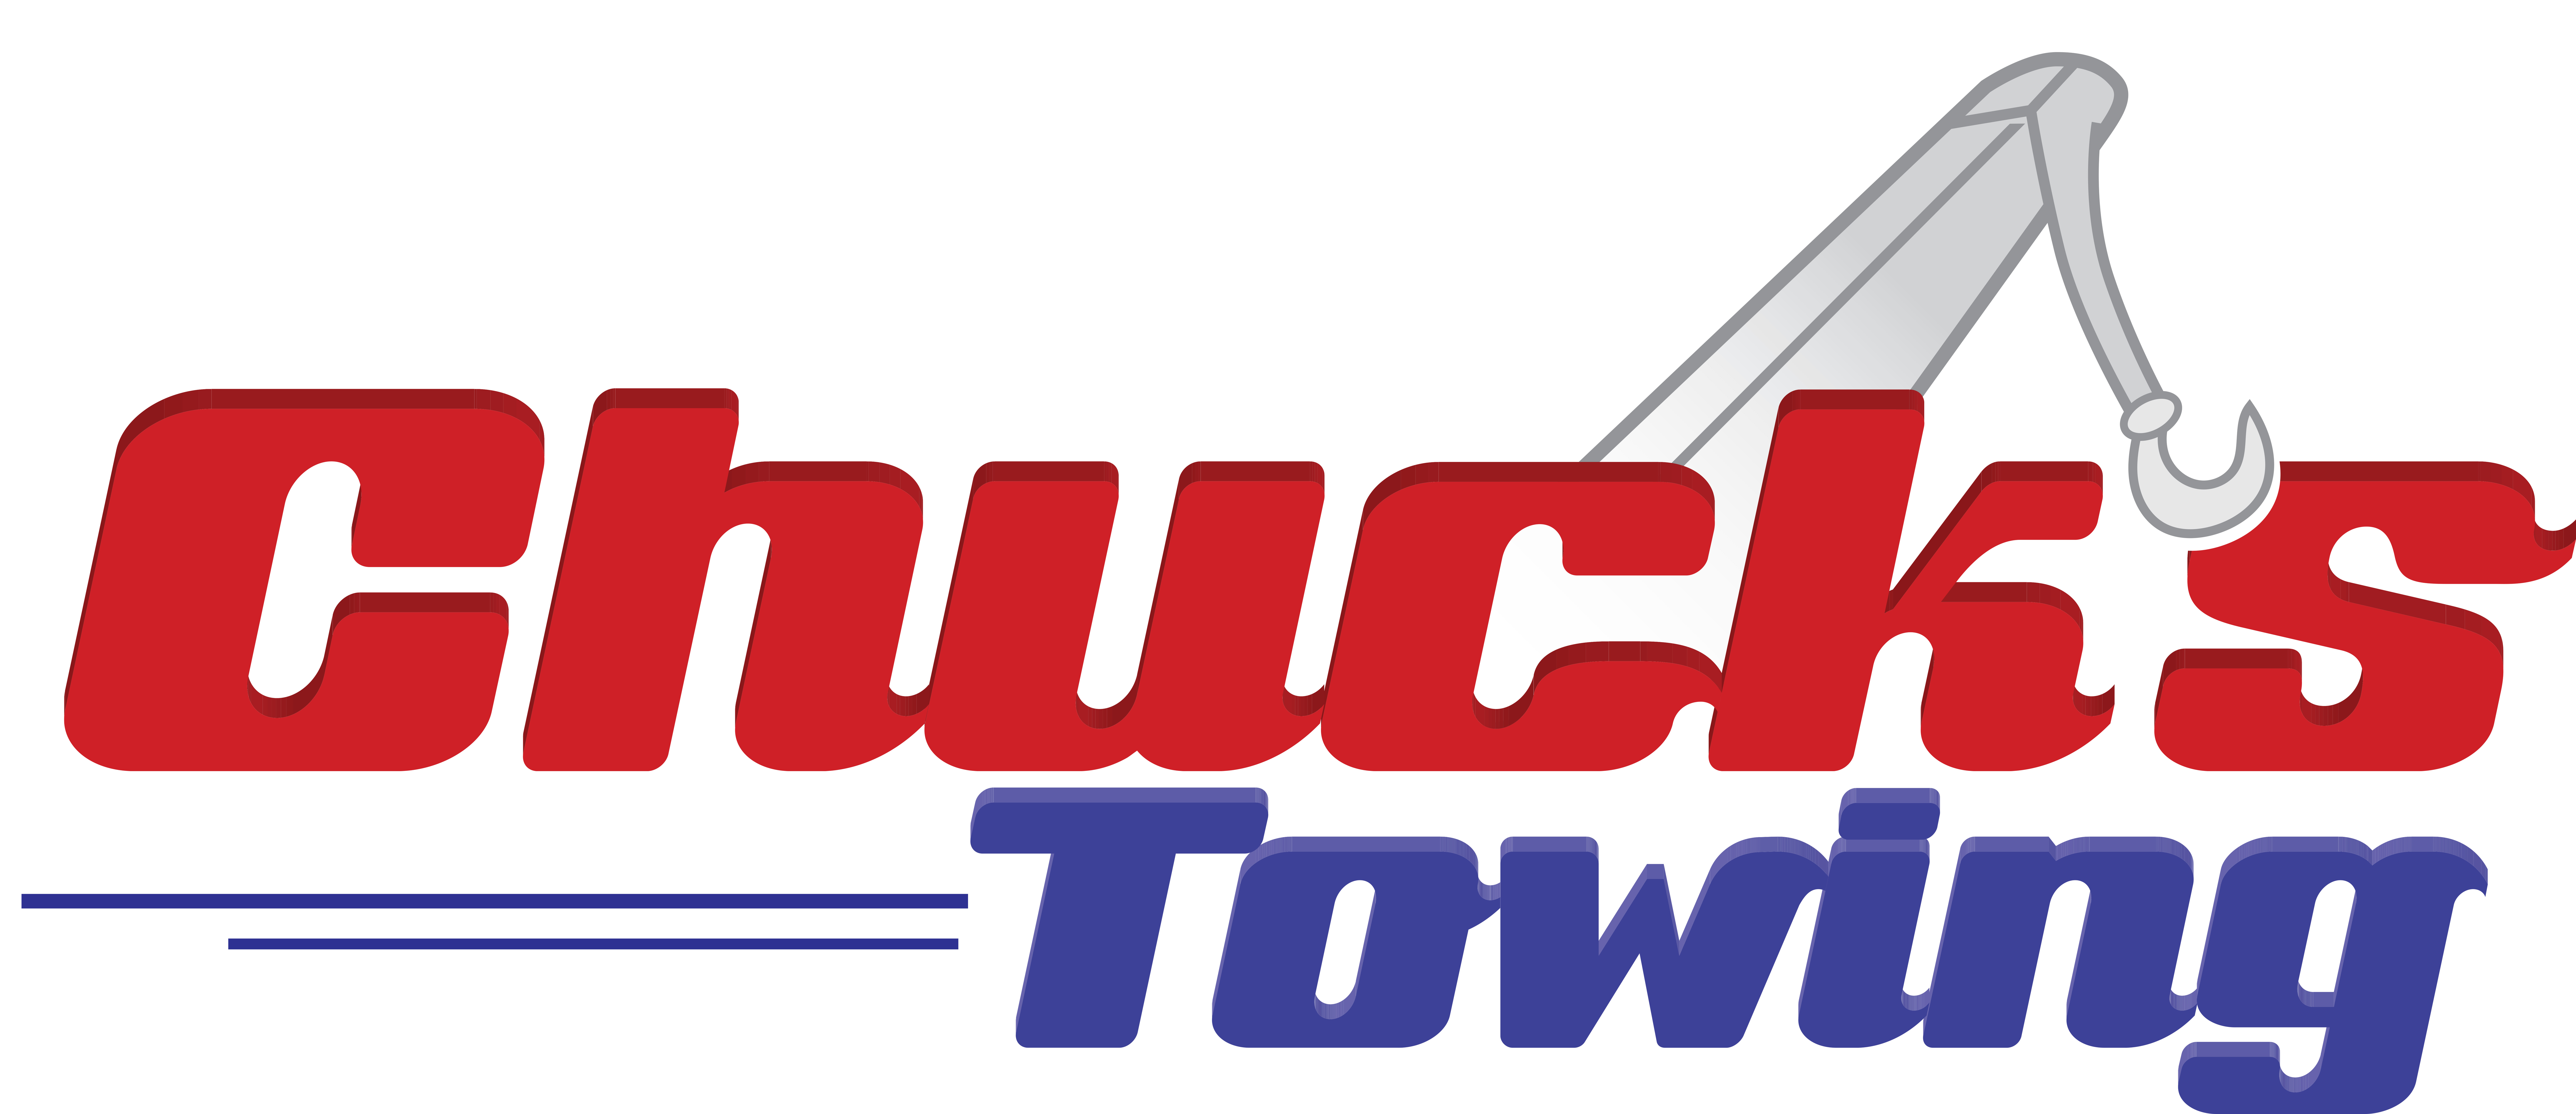 CHUCK'S TOWING, INC. logo